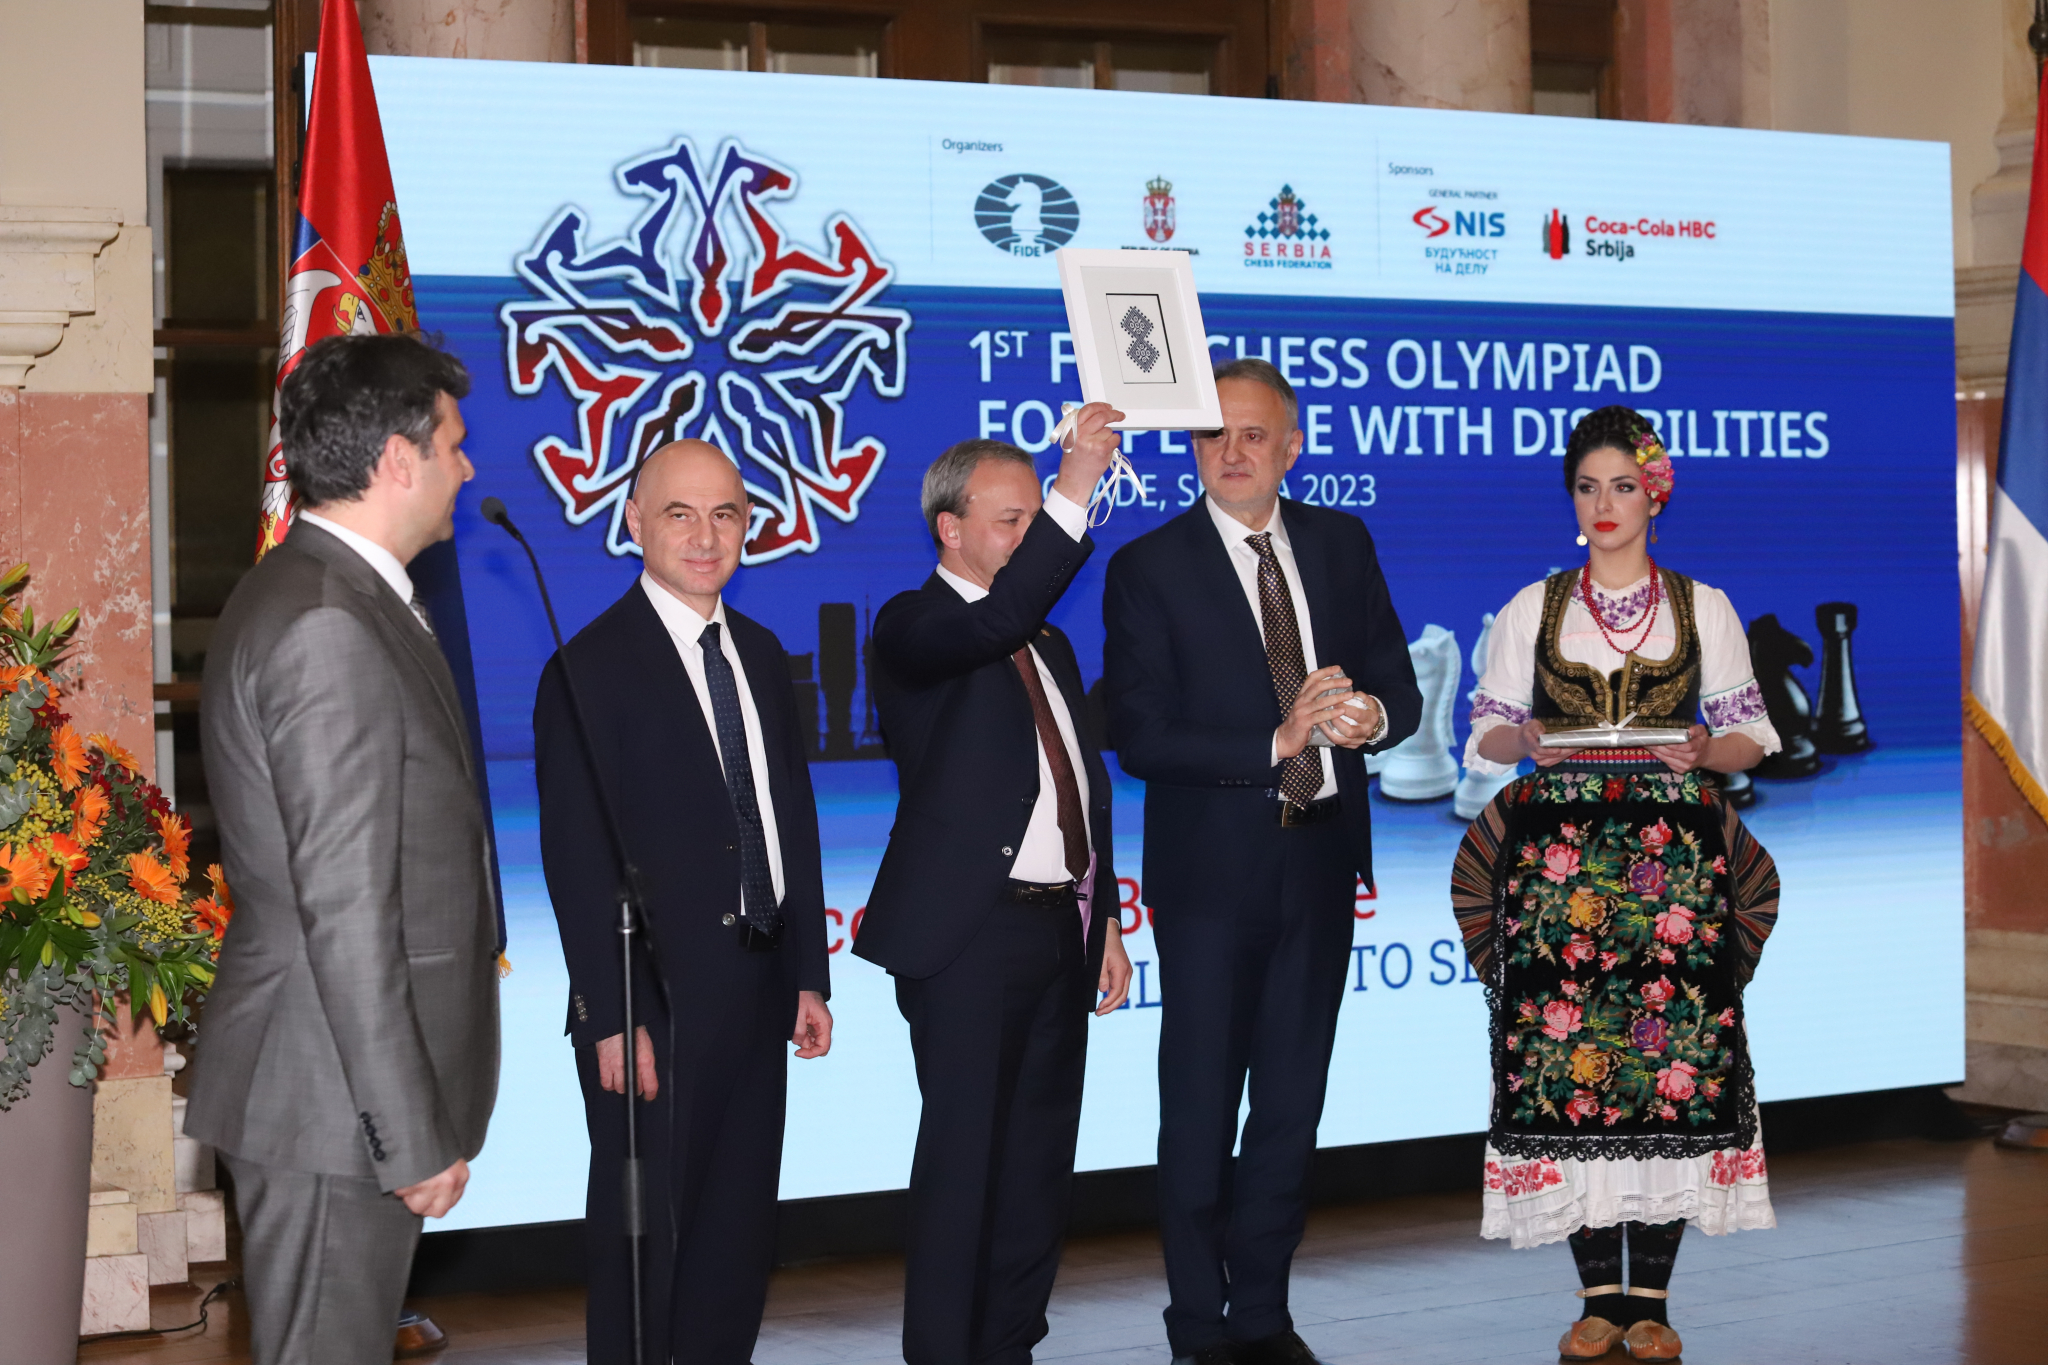 ŠAHOVSKA ISTORIJA SE ISPISUJE U PRESTONICI SRBIJE U Beogradu otvorena prva FIDE šahovska Olimpijada za osobe sa invaliditetom, ministar Gajić poručuje: Ukazana nam je velika čast (VIDEO)